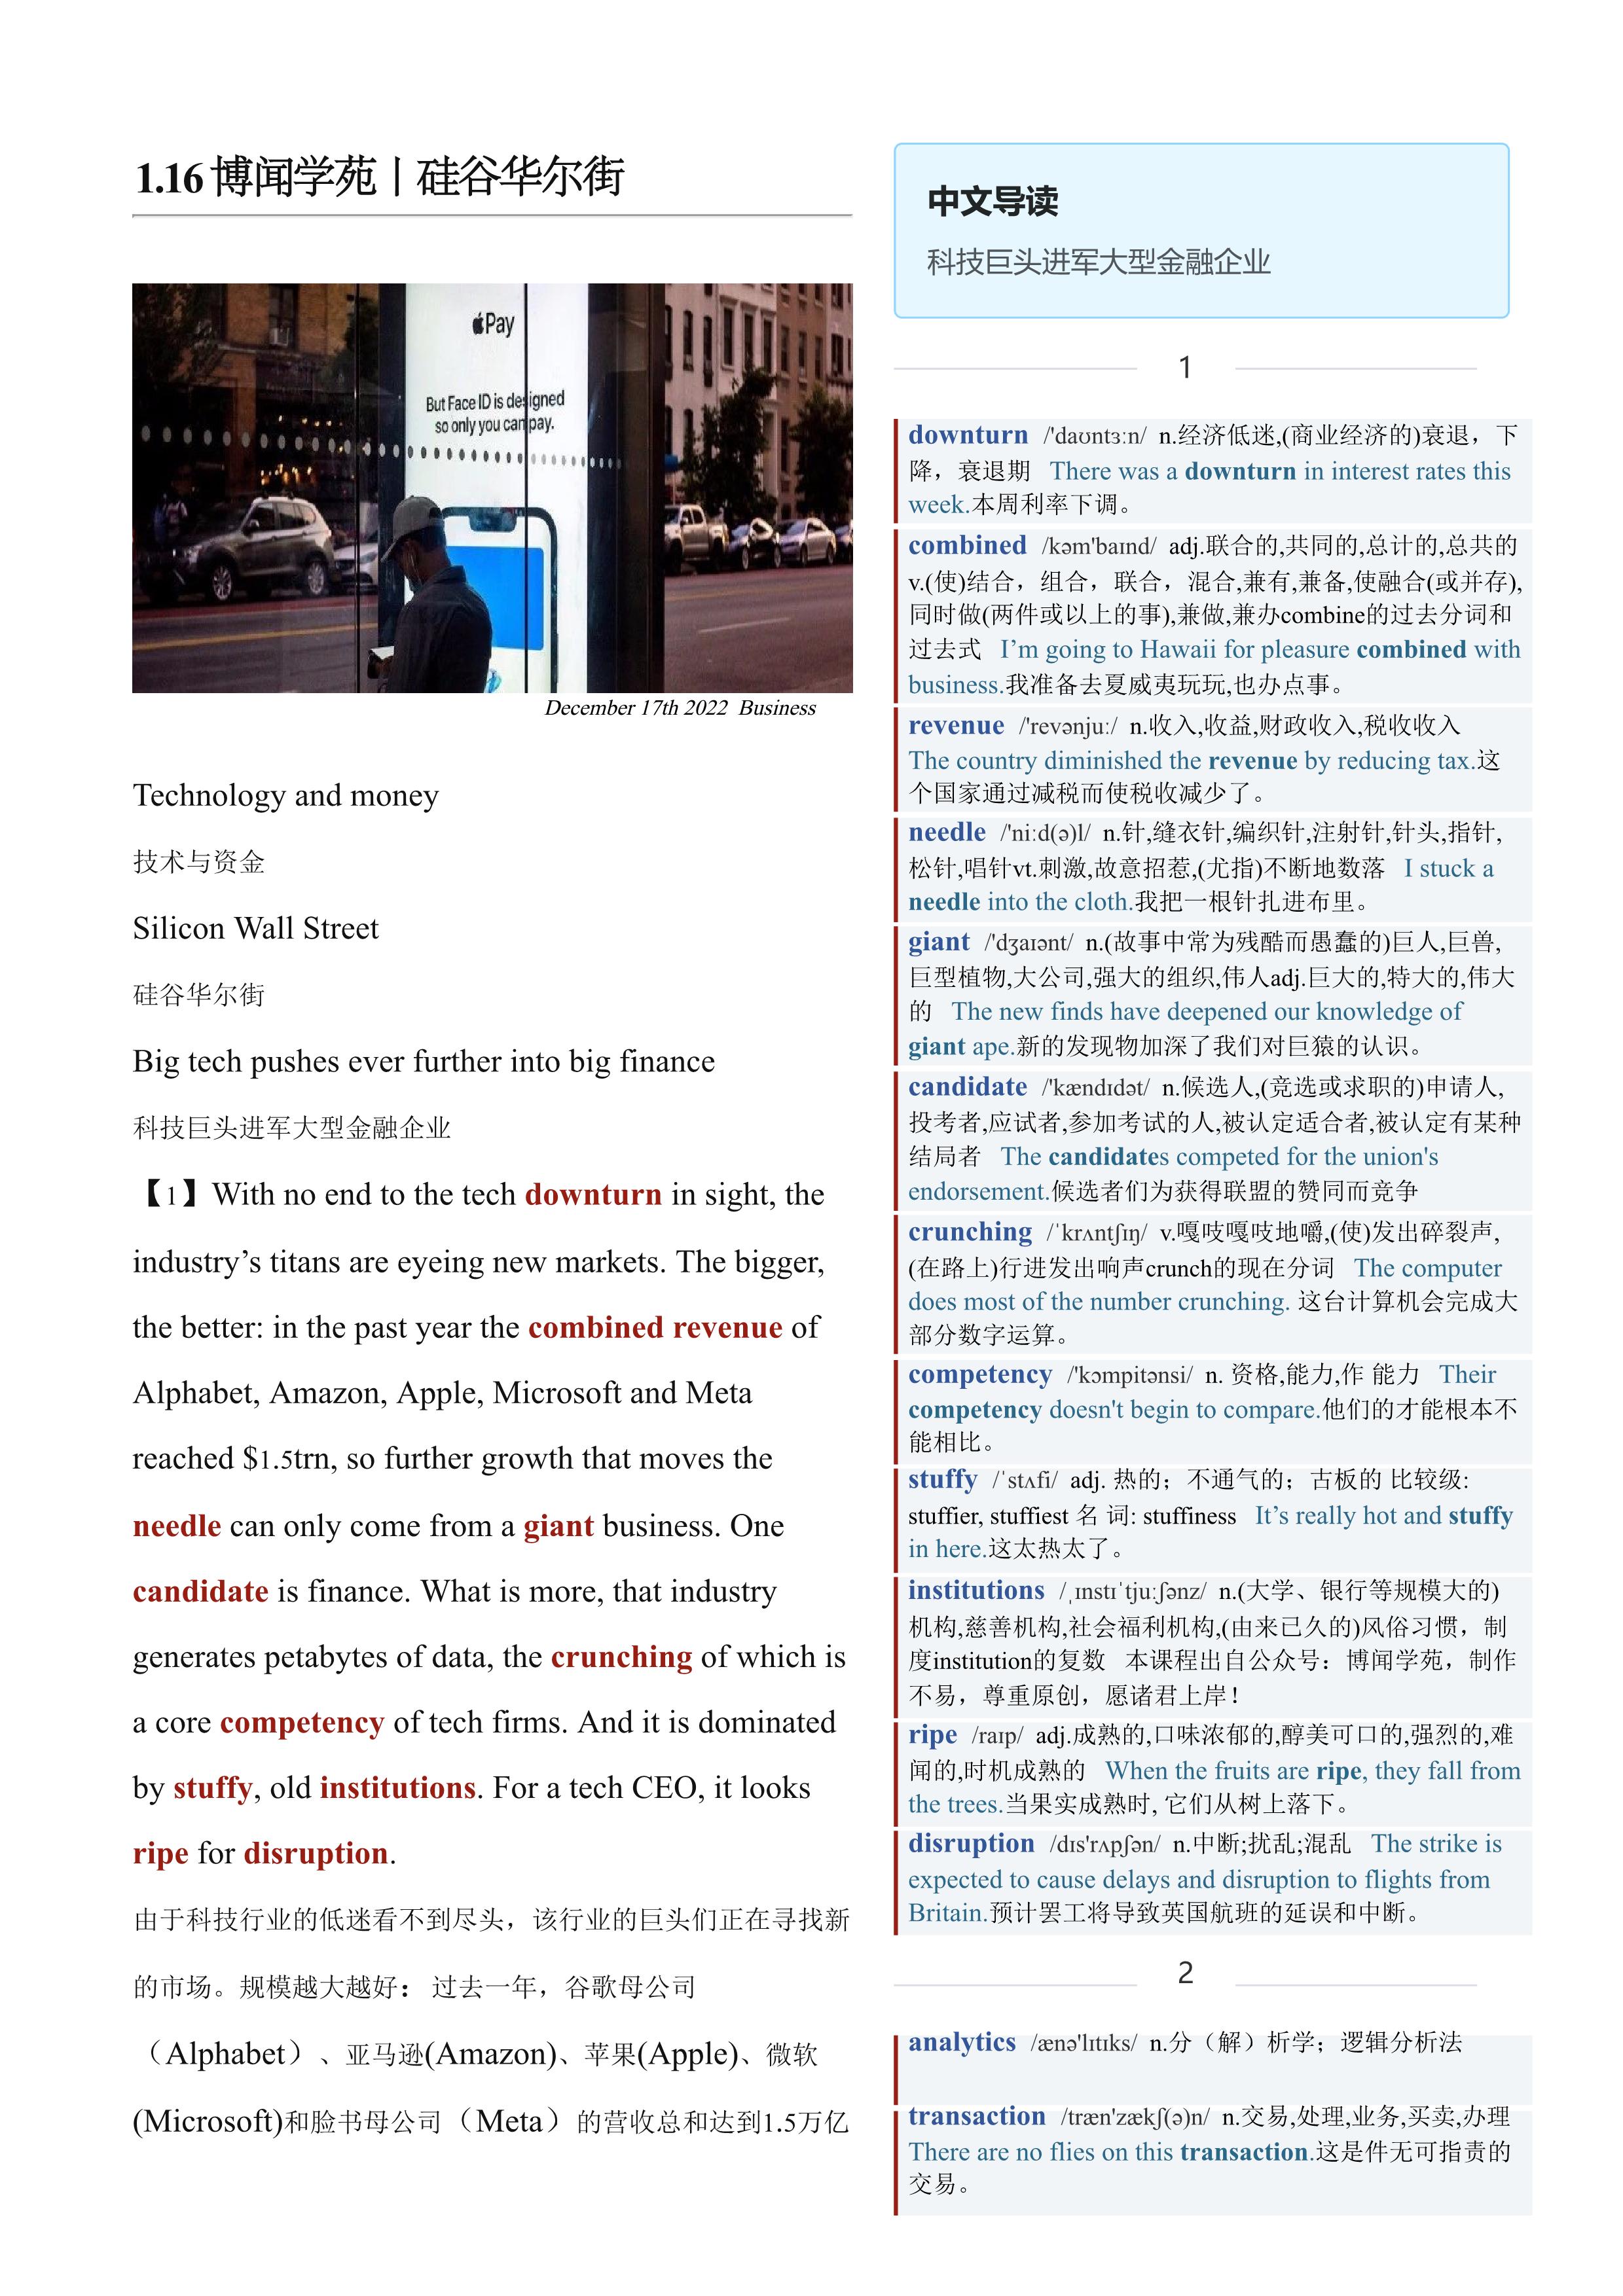 2023.01.16 经济学人双语精读丨硅谷华尔街 (.PDF/DOC/MP3)